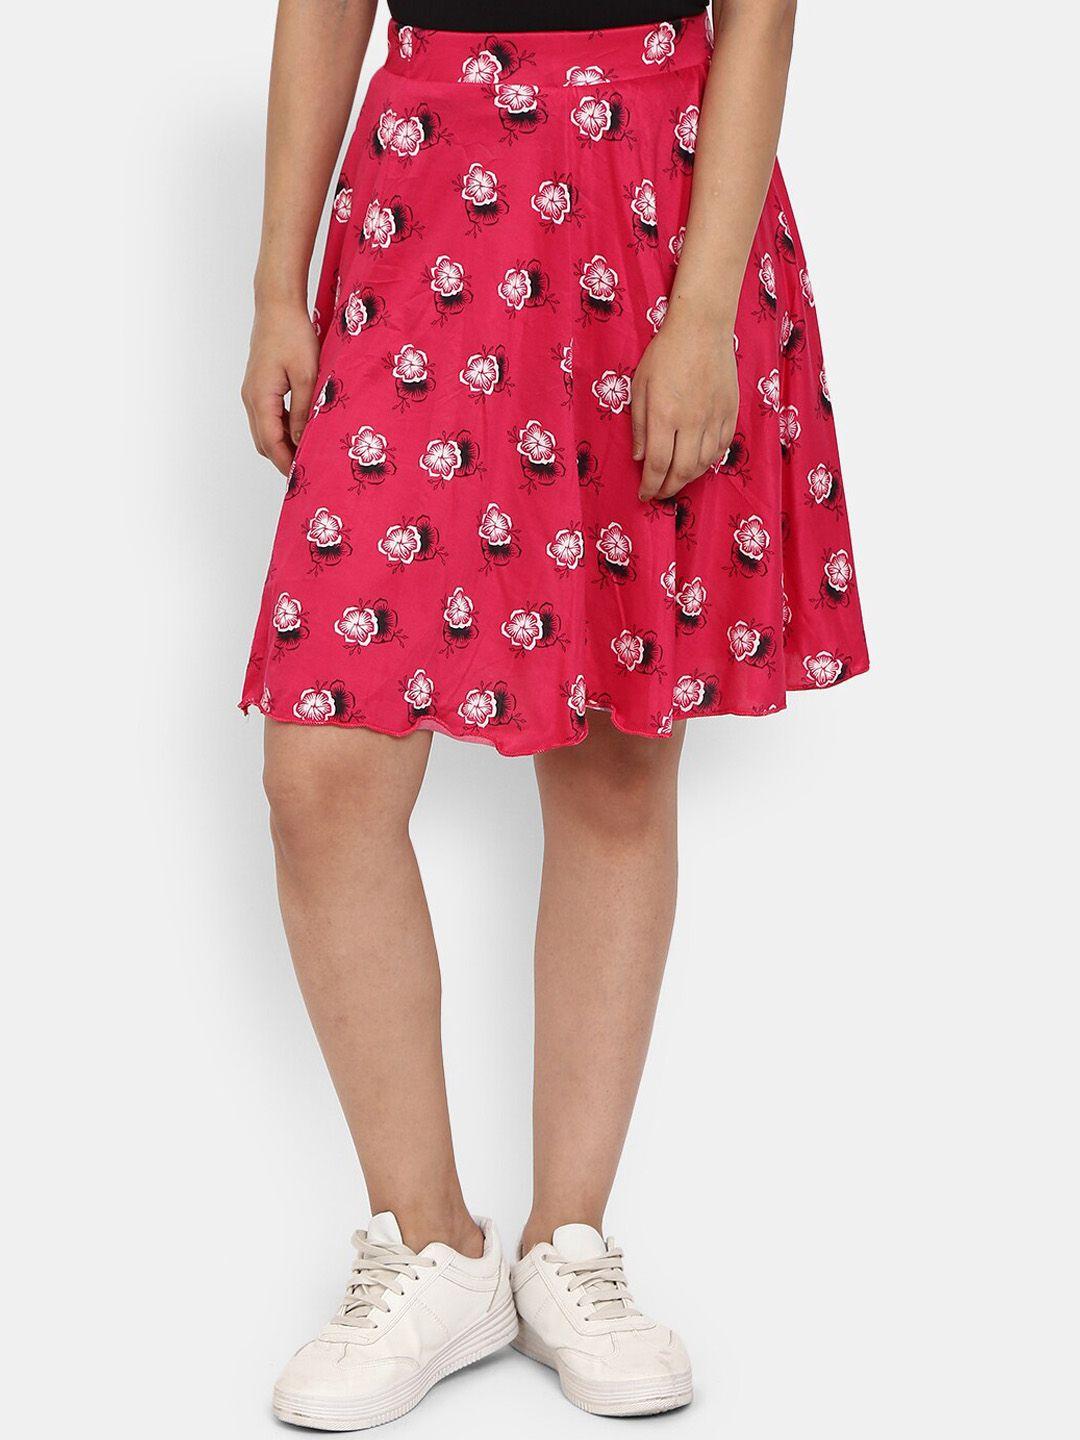 v-mart floral printed above knee length flared skirt